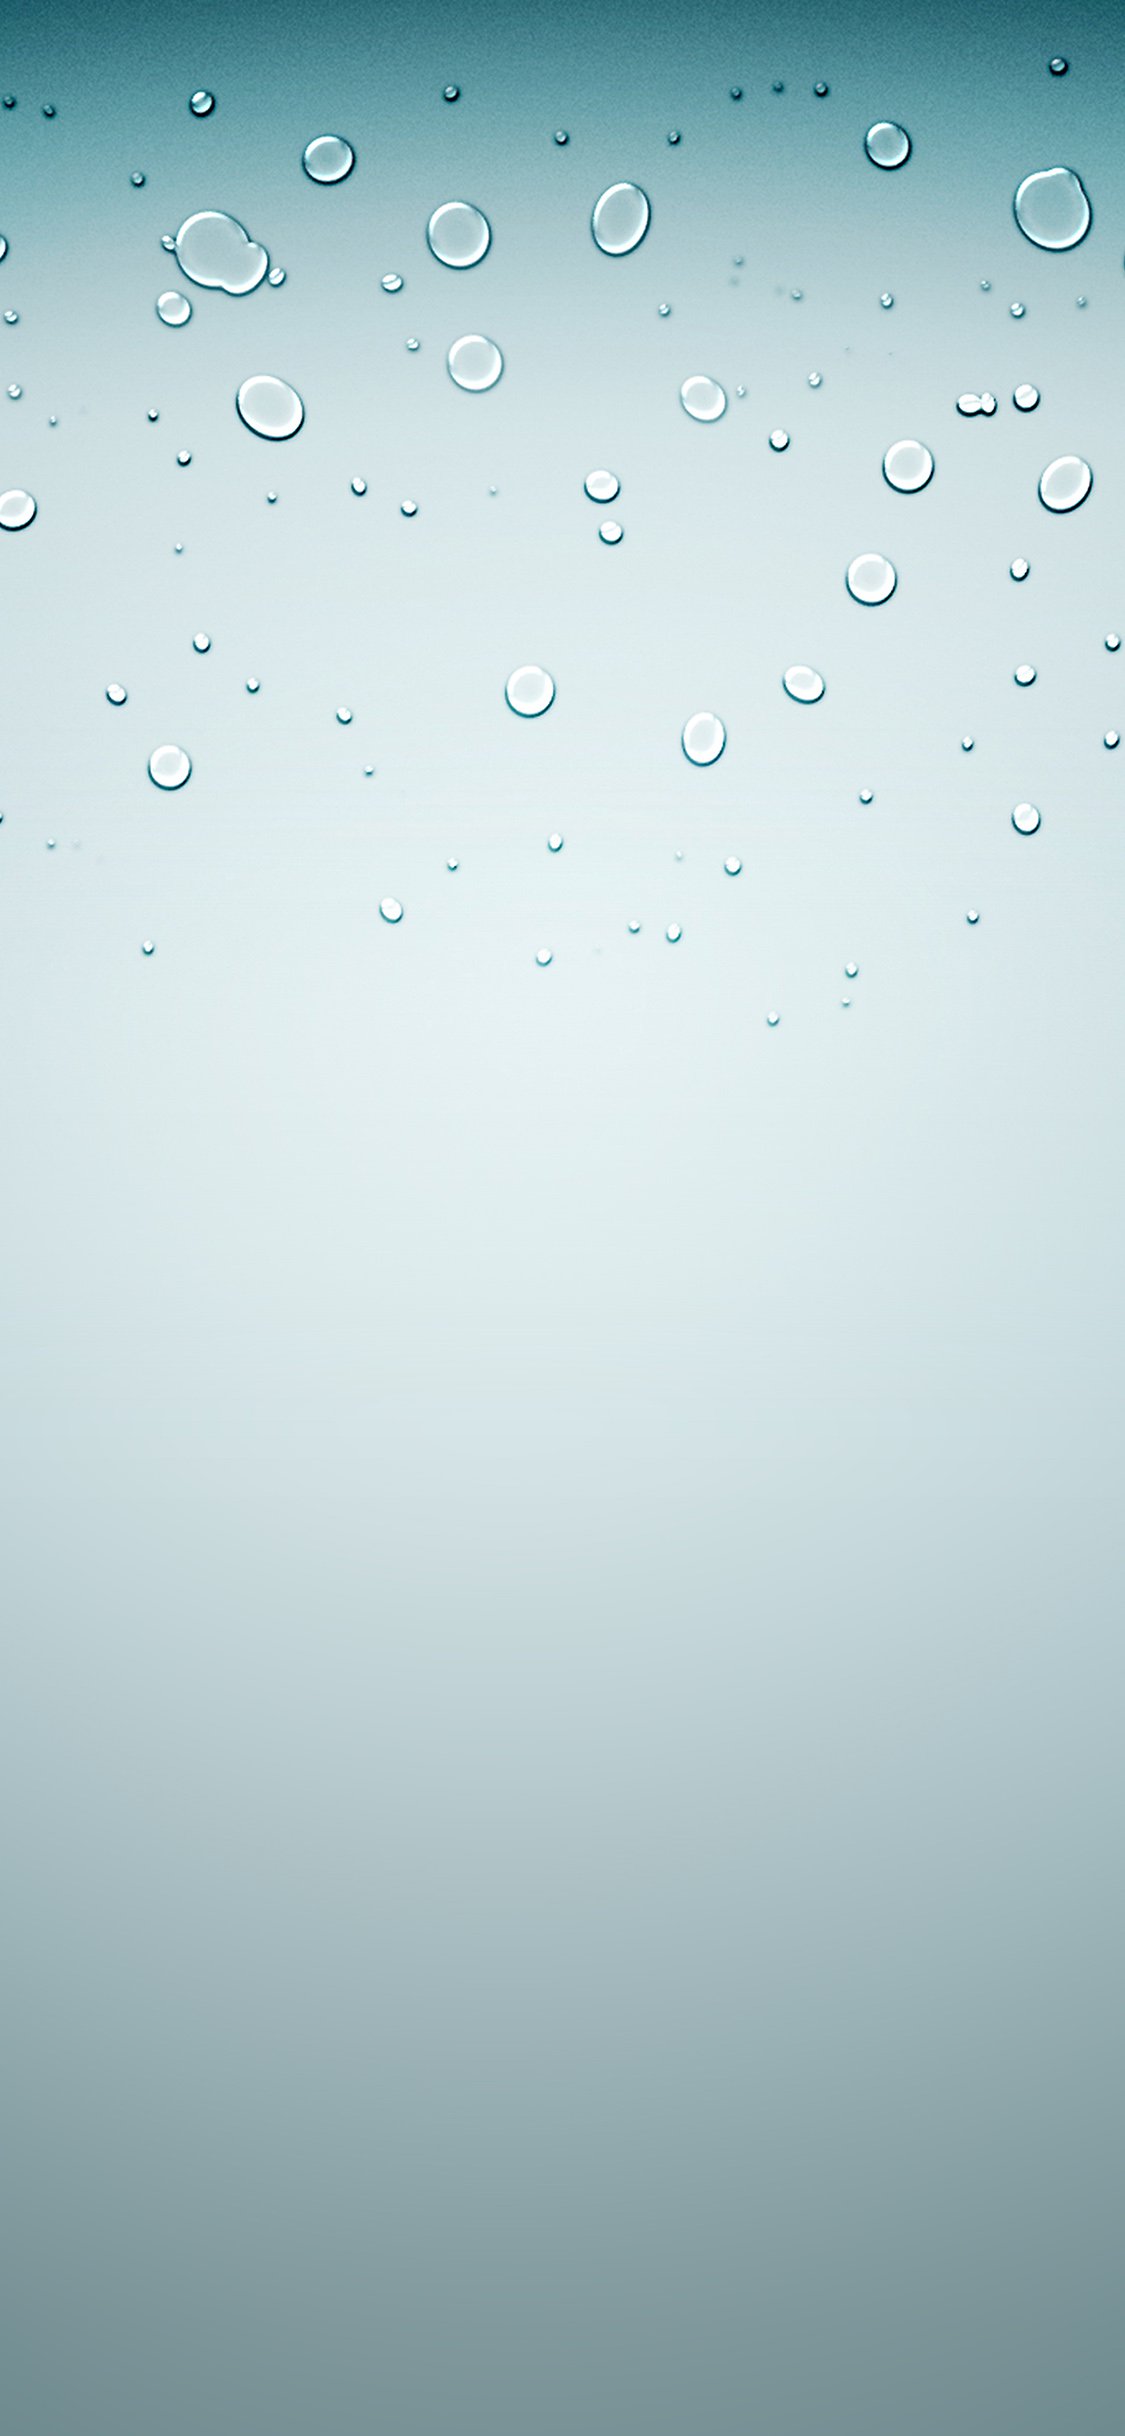 Iphone 桌布下載 精選20 張水滴系列iphone 桌布 蘋果仁 你的科技媒體